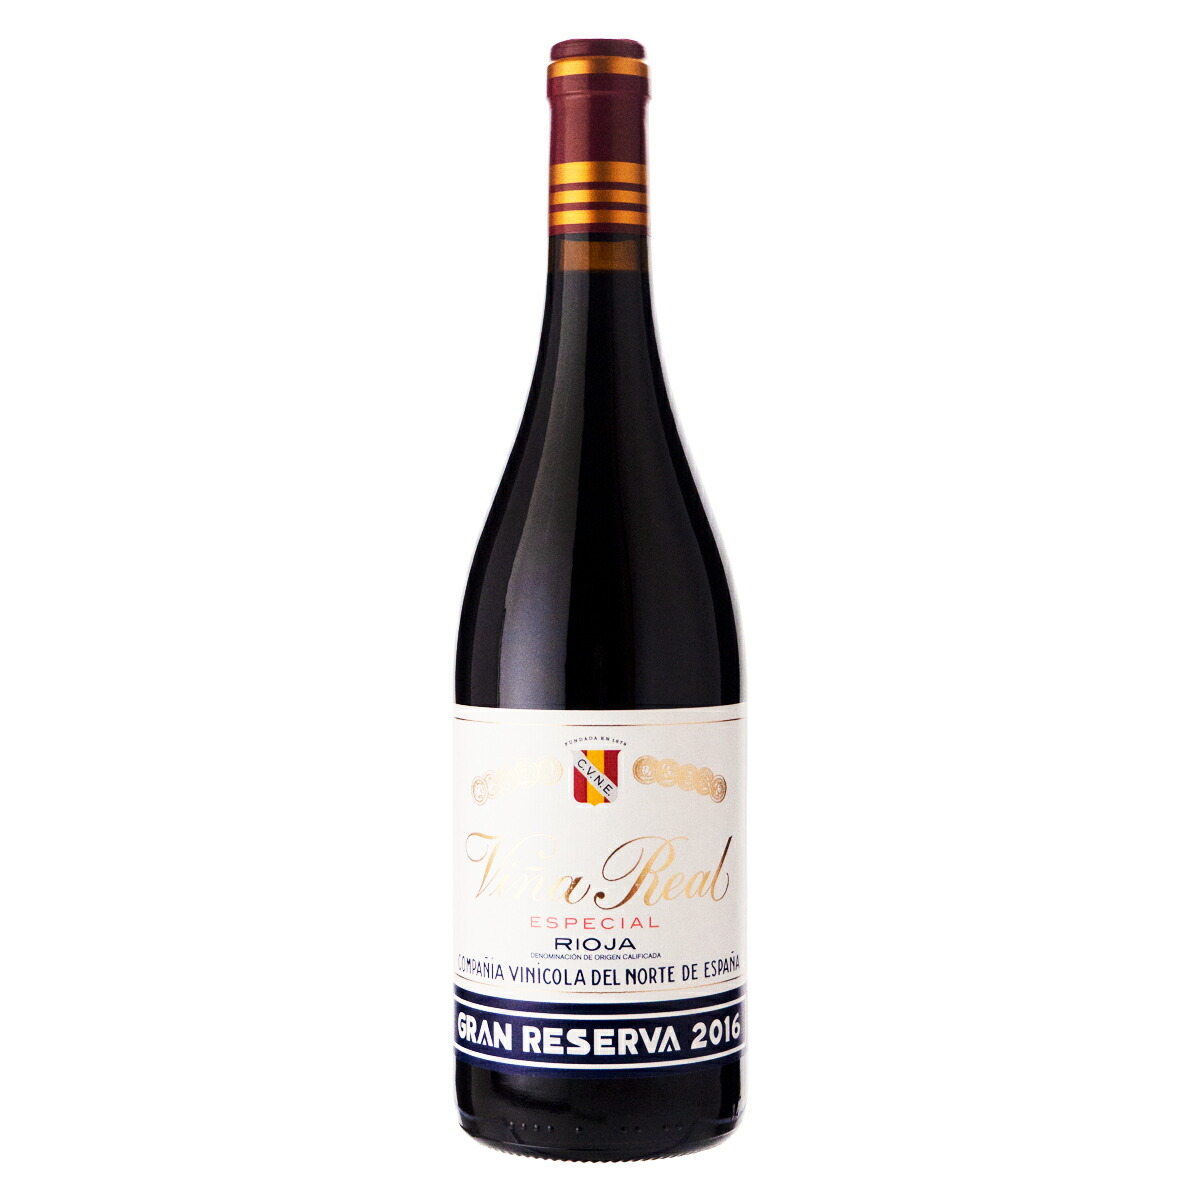 C.V.N.E. クネ ビーニャ・レアル グラン・レセルバ 2016 750mlびん 1本 ワイン 赤ワインの商品画像